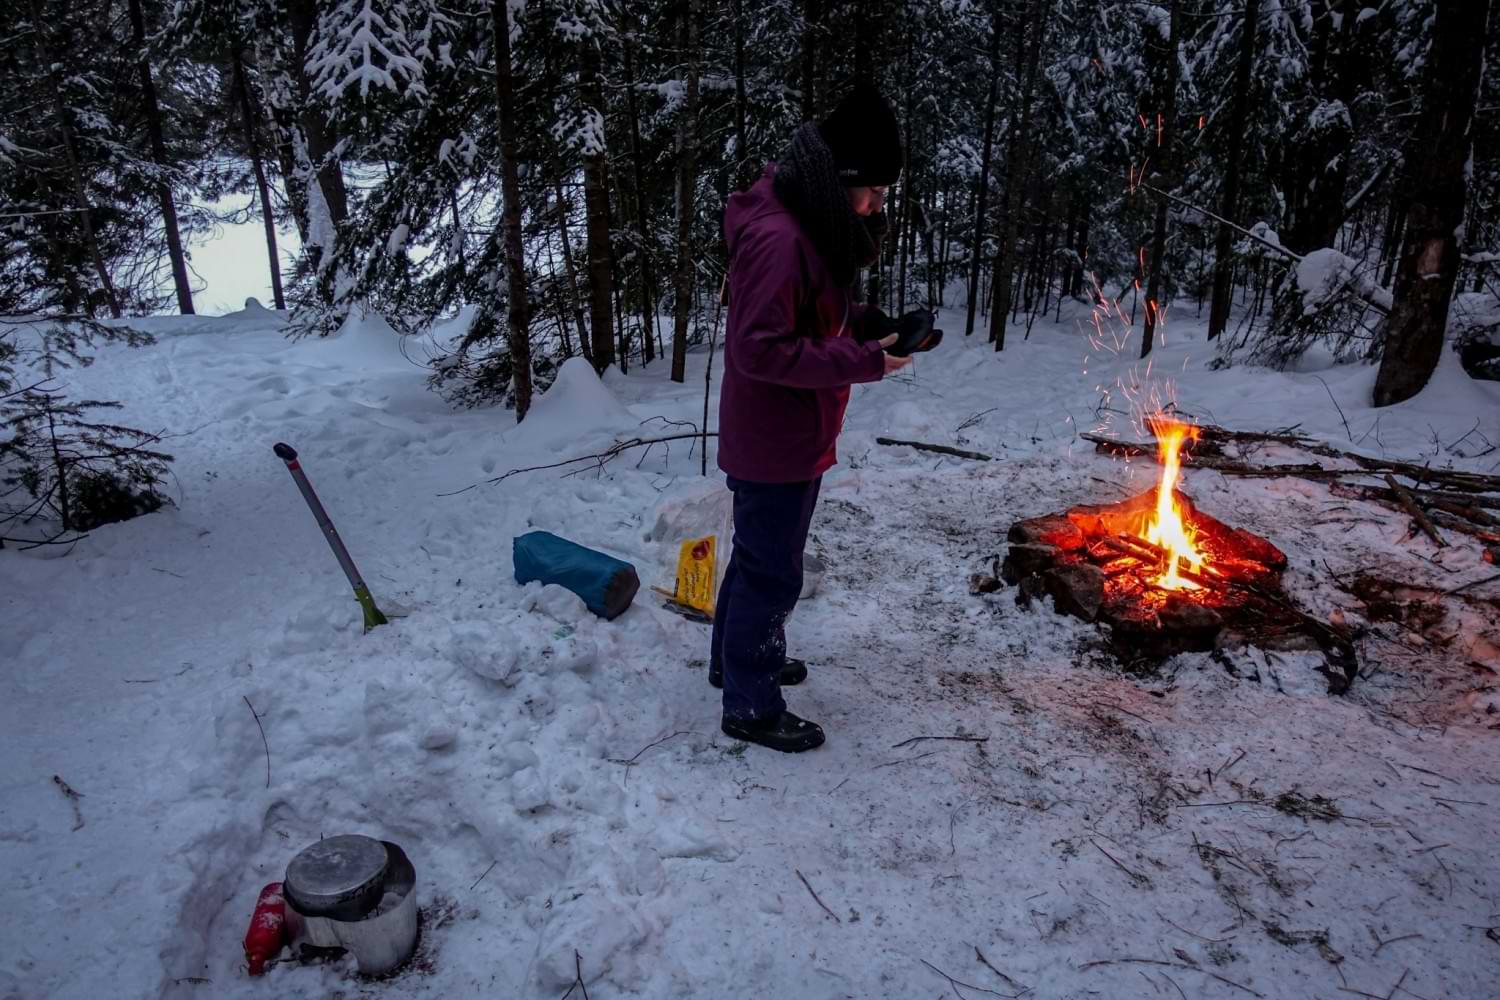 5 Winter Camping Myths - Debunked